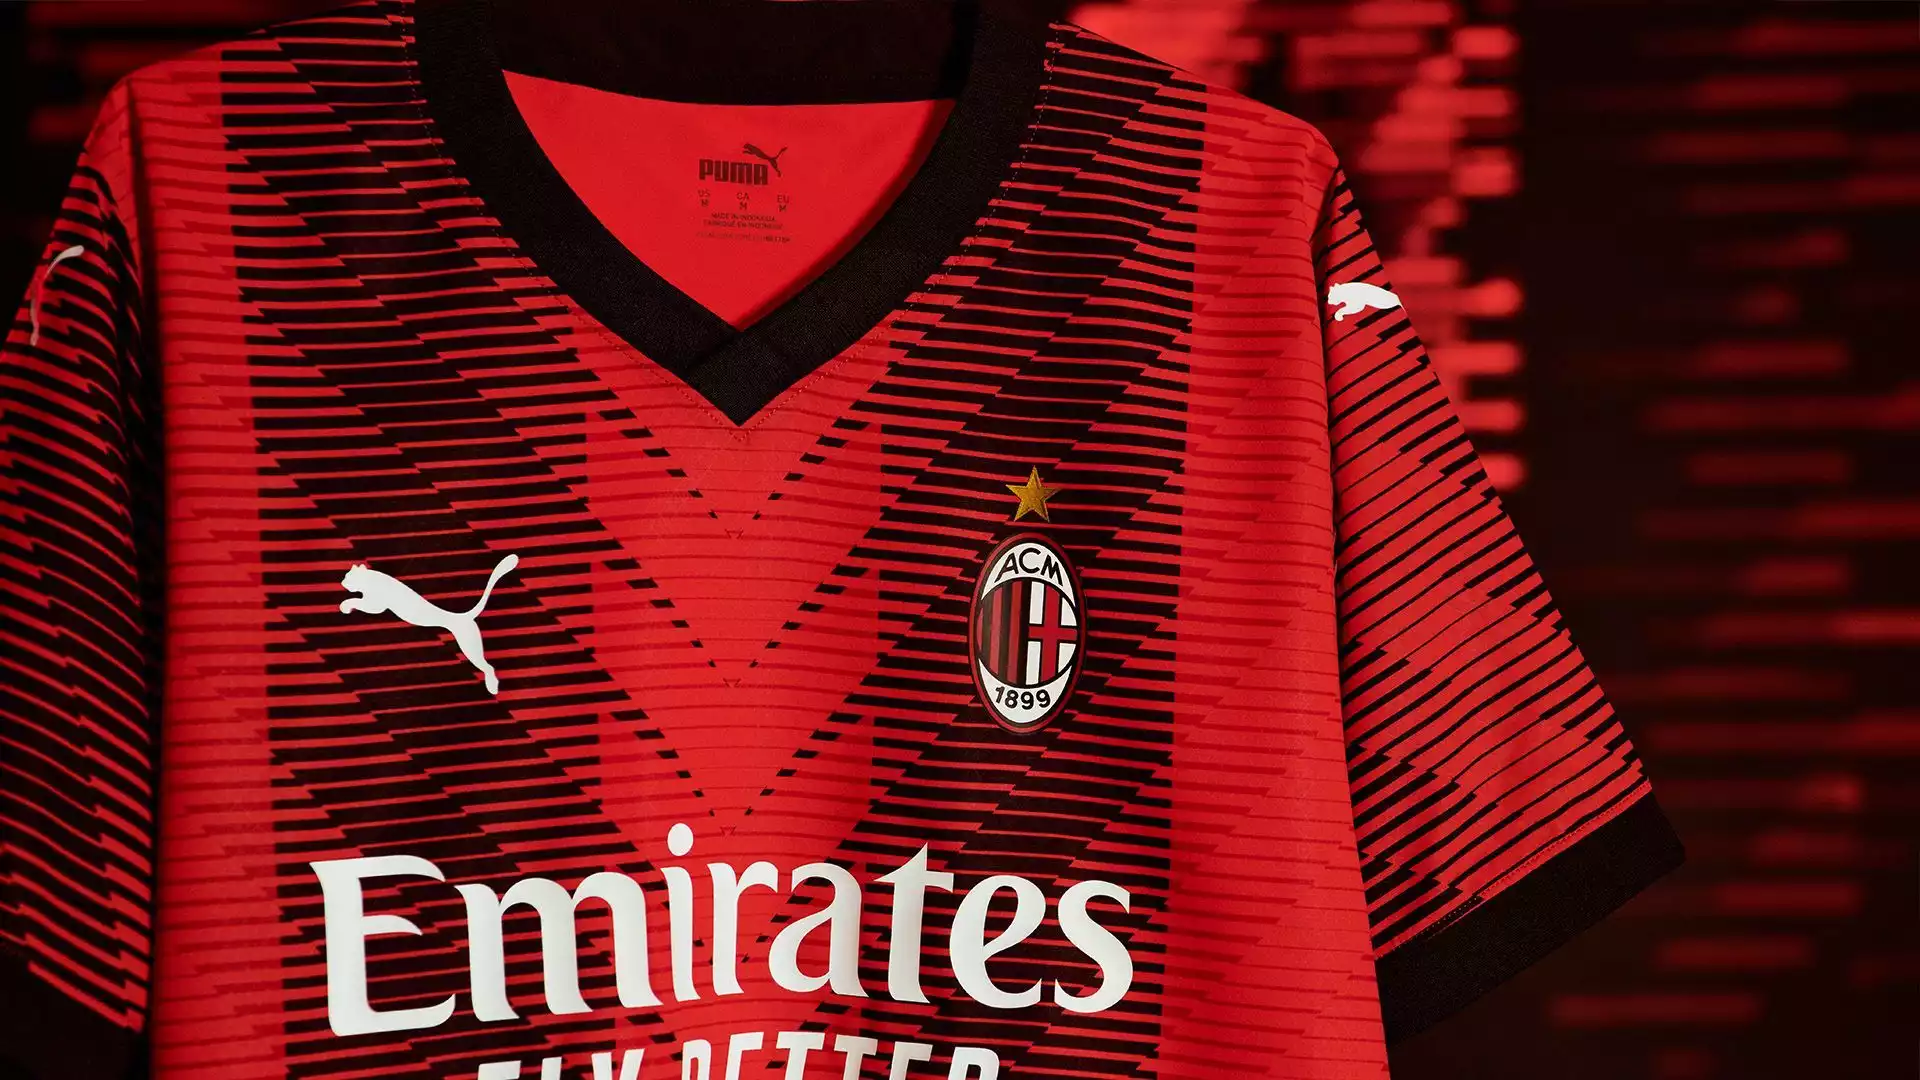 La nuova maglia del AC Milan reinventa le tradizionali striscie rossonere, che hanno reso il club una vera e propria icona di questo sport